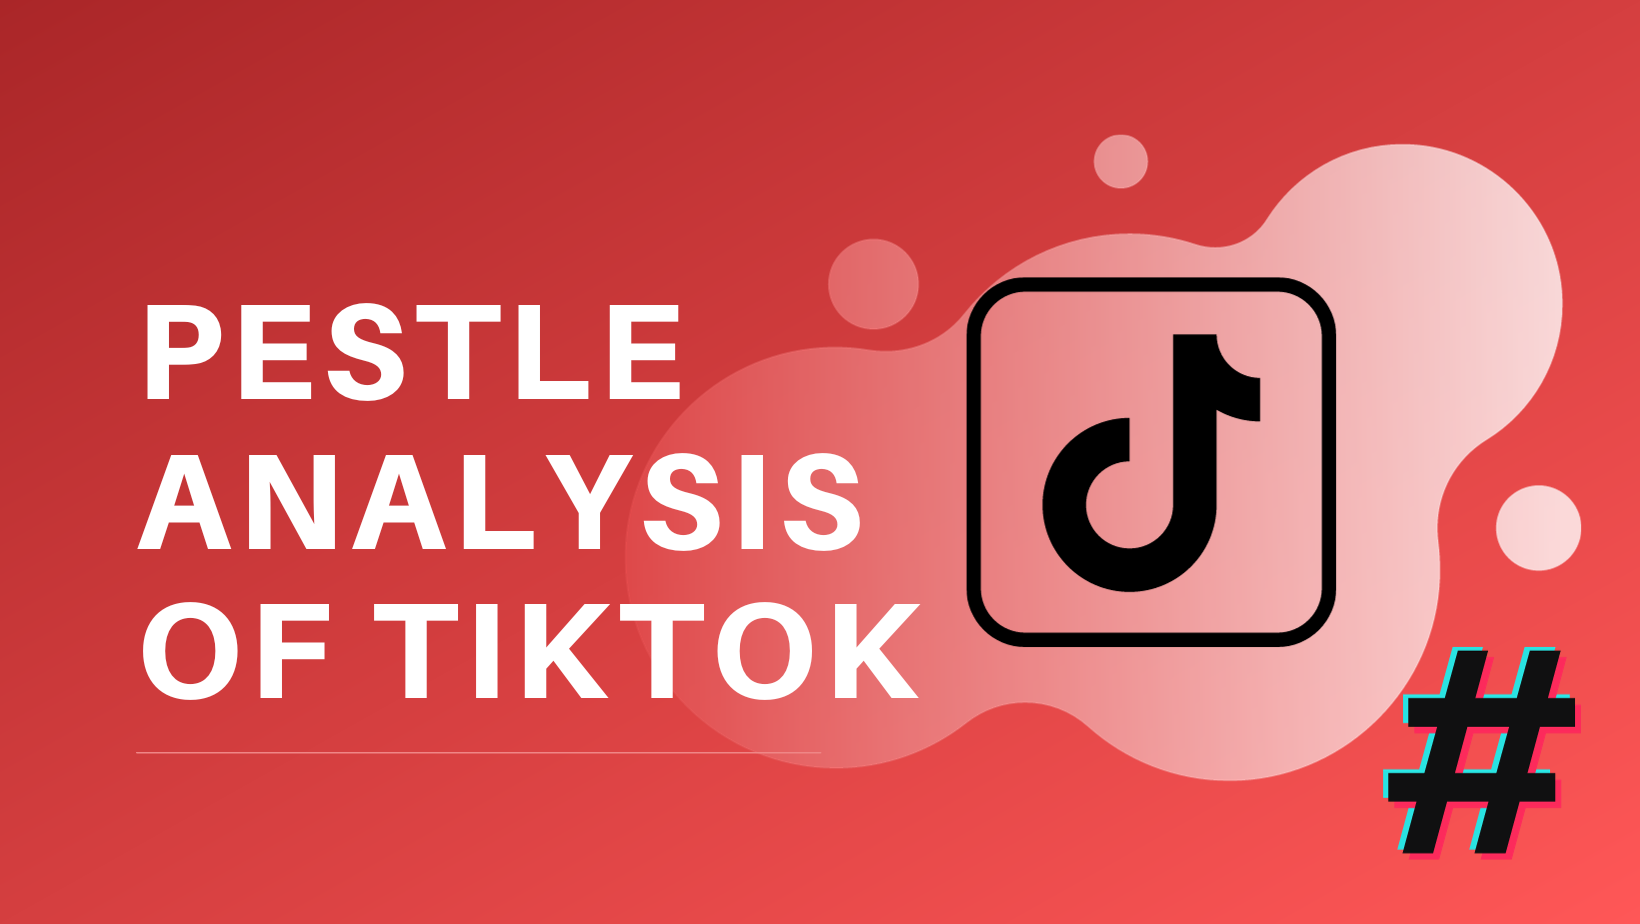 PESTEL Analysis of TikTok